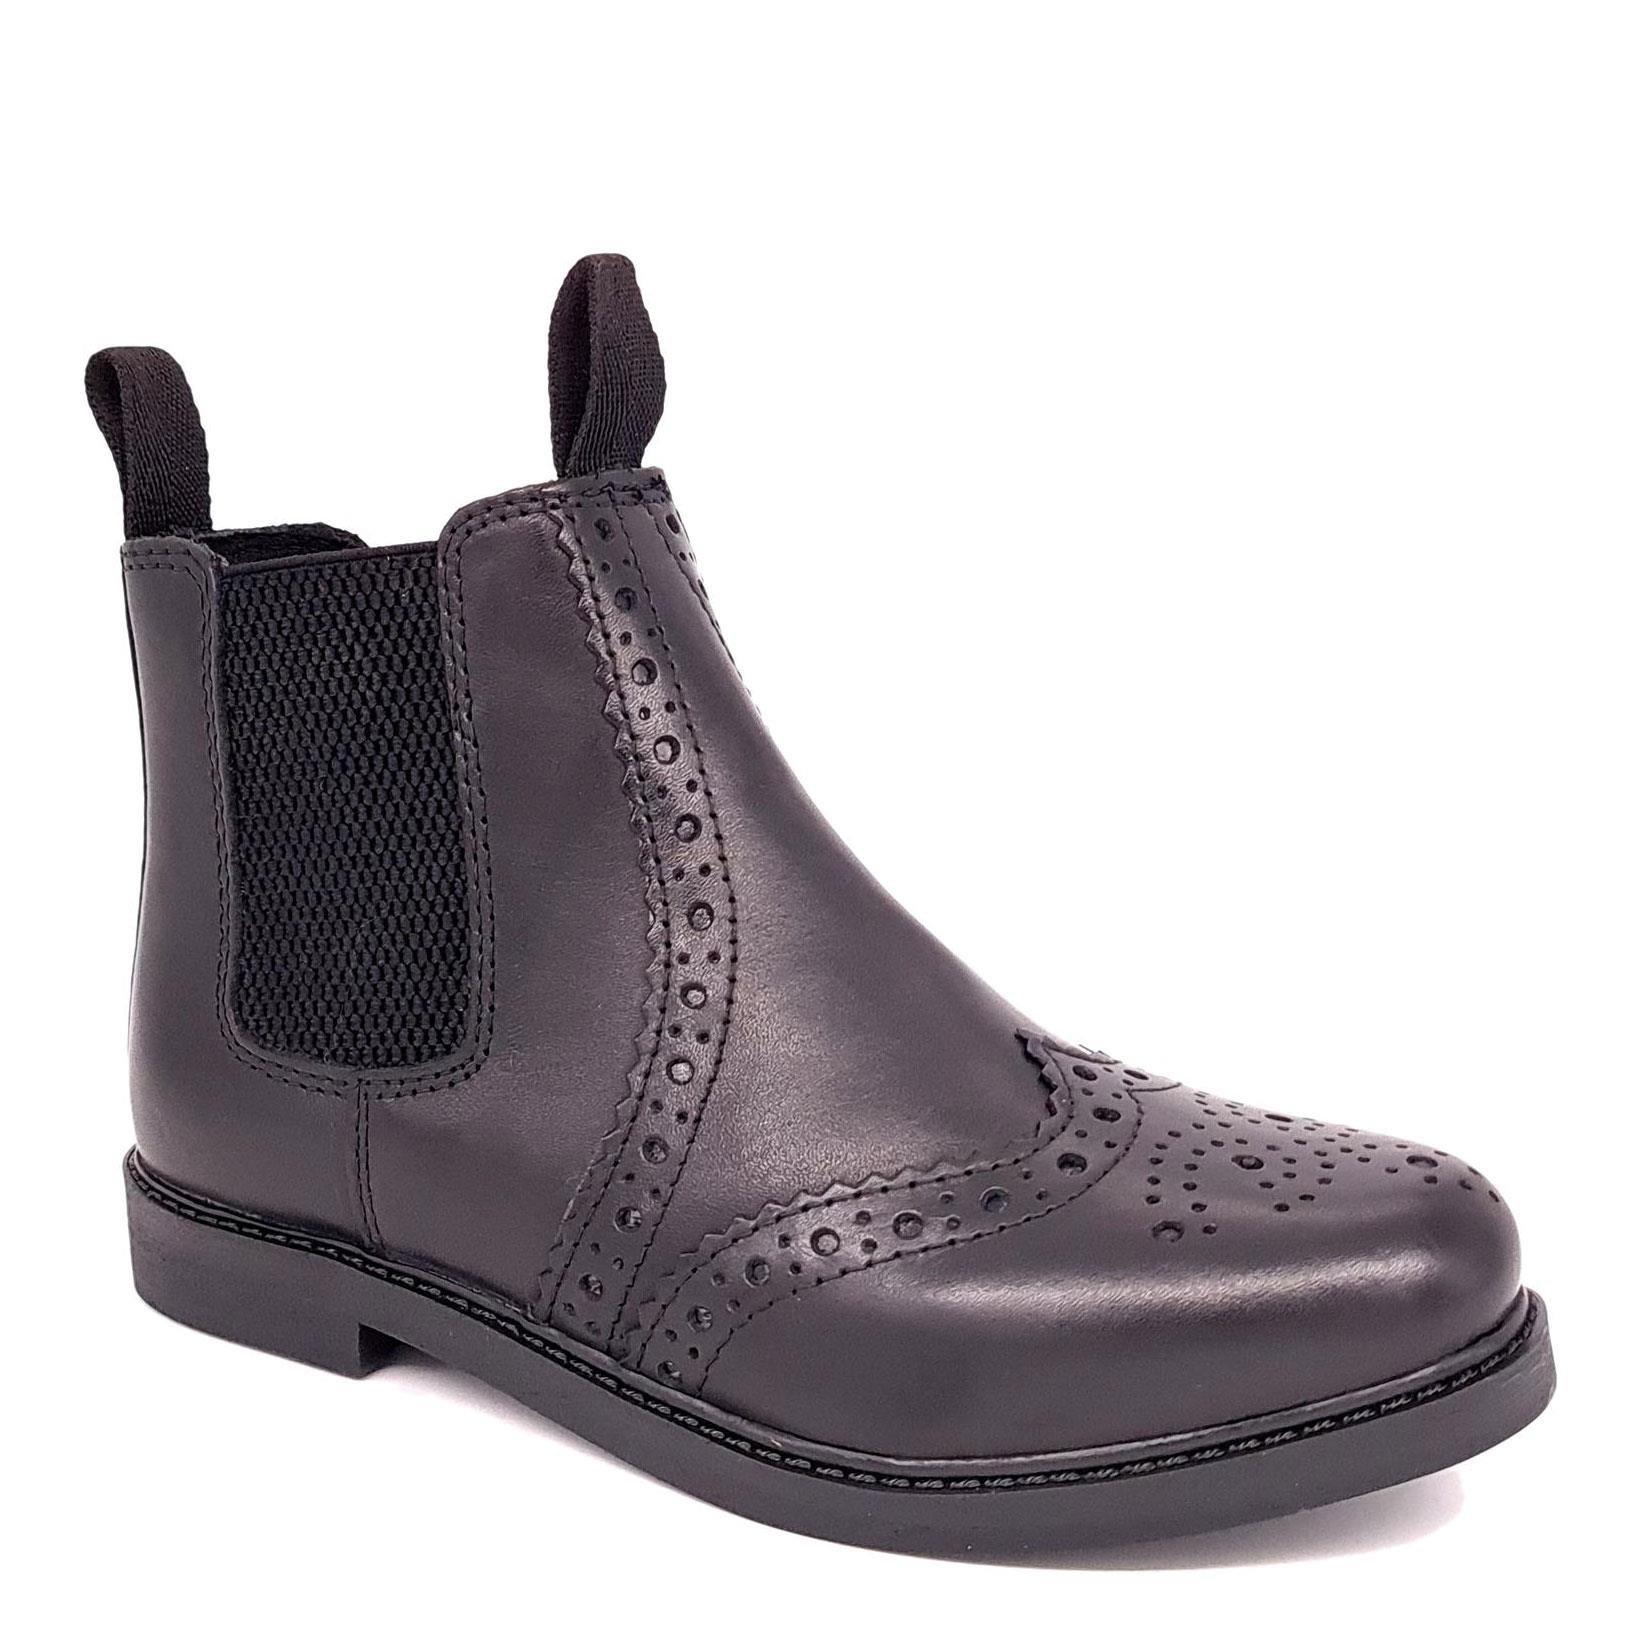 Кожаные ботинки челси с эффектом броги Cheltenham Frank James, черный кожаные формальные туфли броги harlow с острым носком frank james коричневый